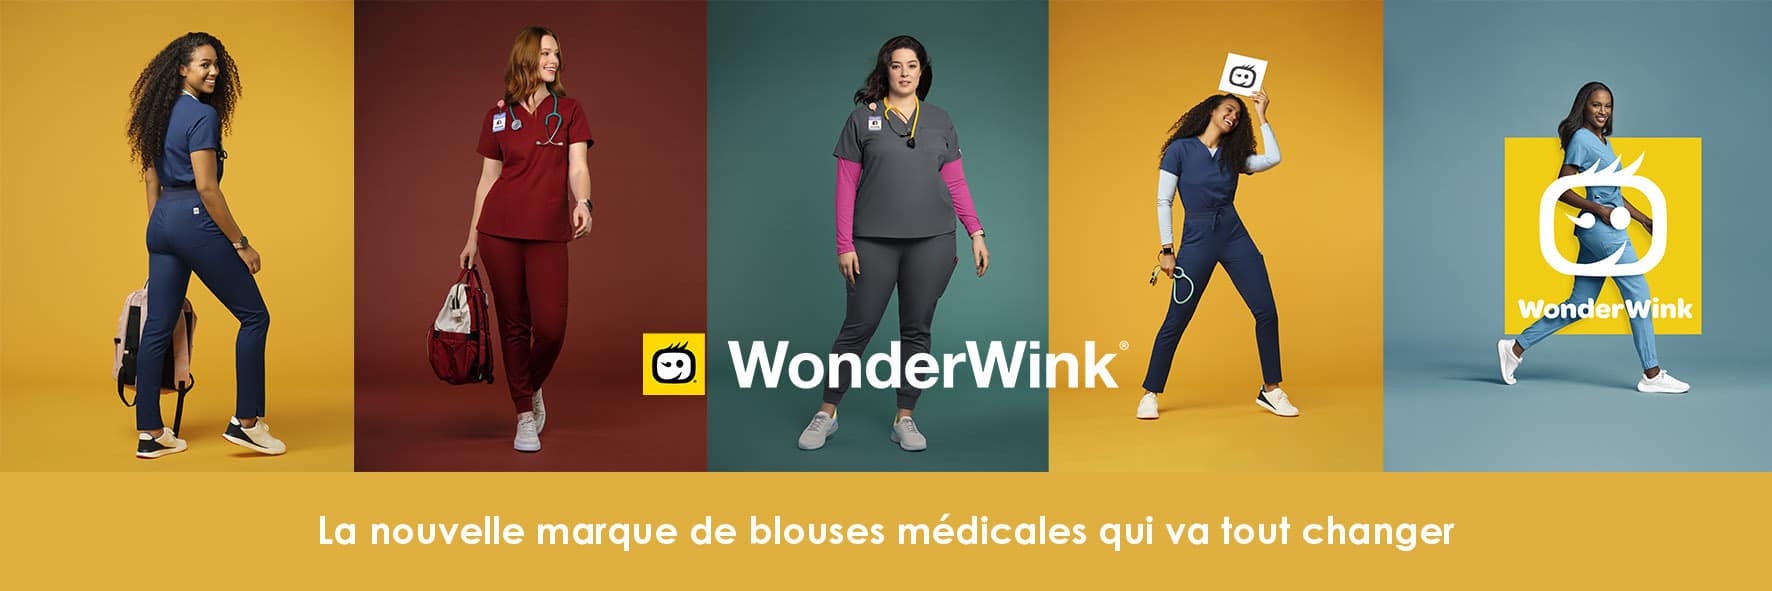 Wonderwink, nouvelle marque de blouse médicale